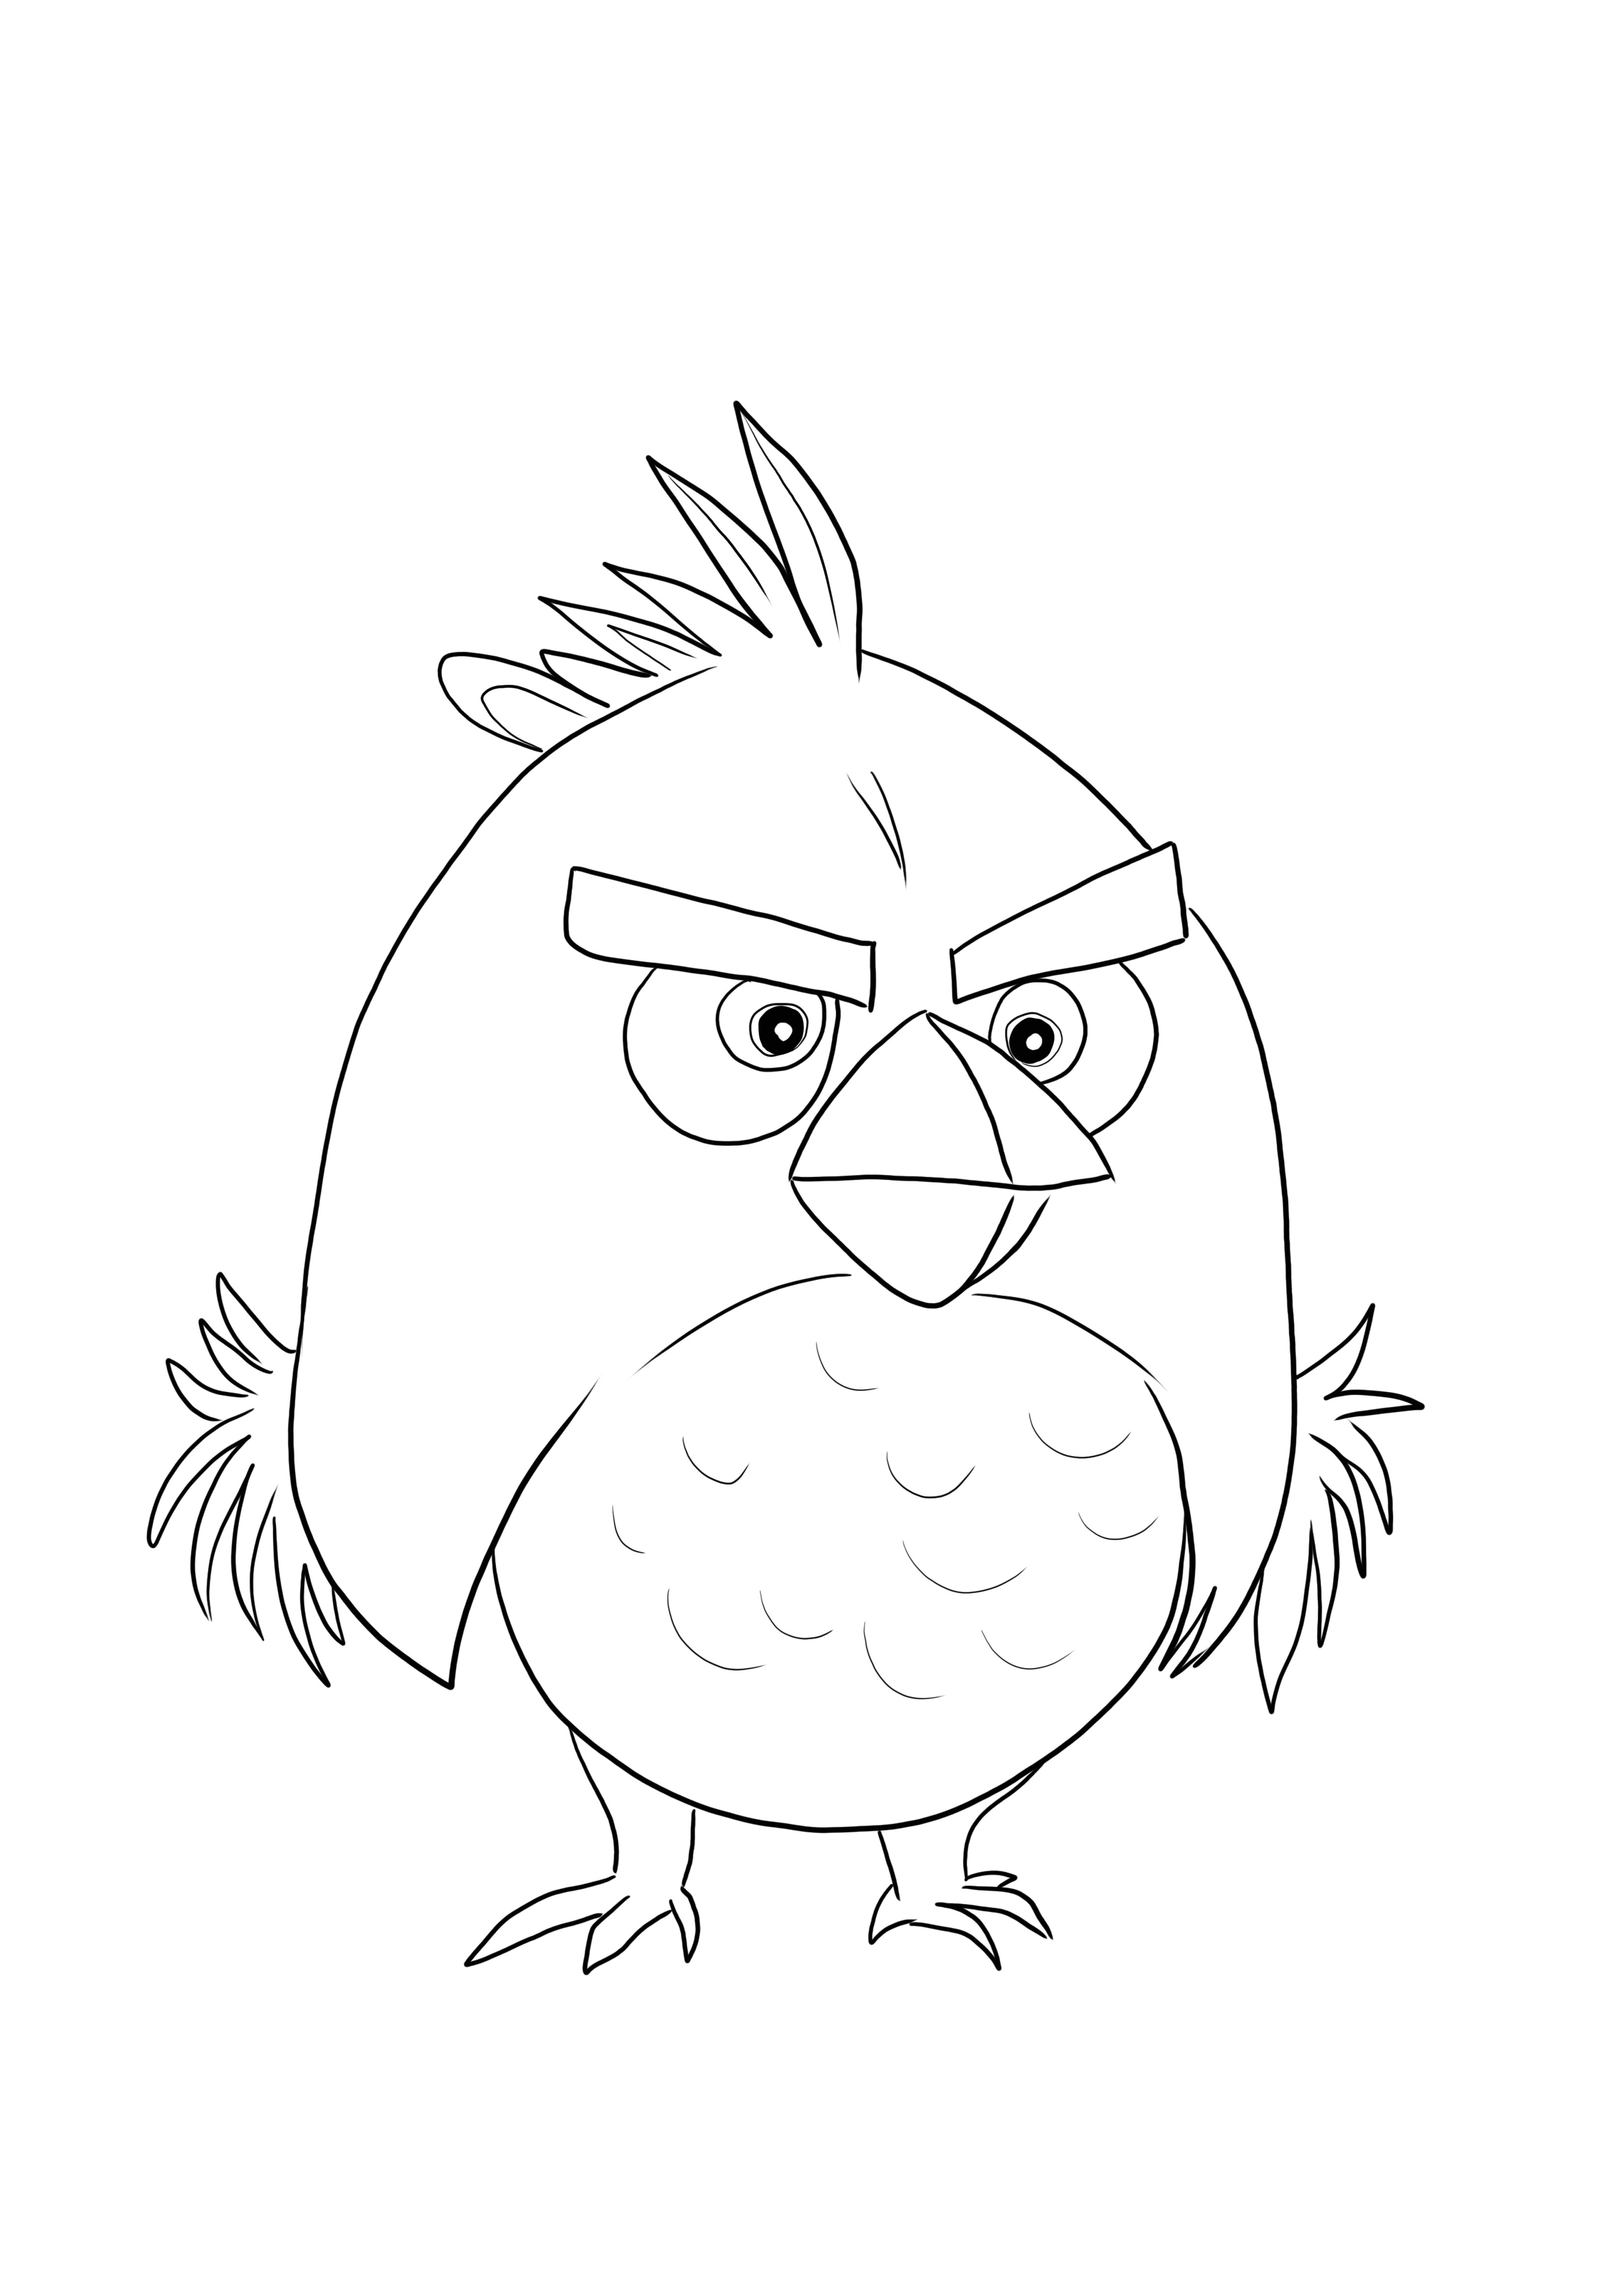 Red Bird dari Angry Birds siap dicetak dan diwarnai dengan warna favorit